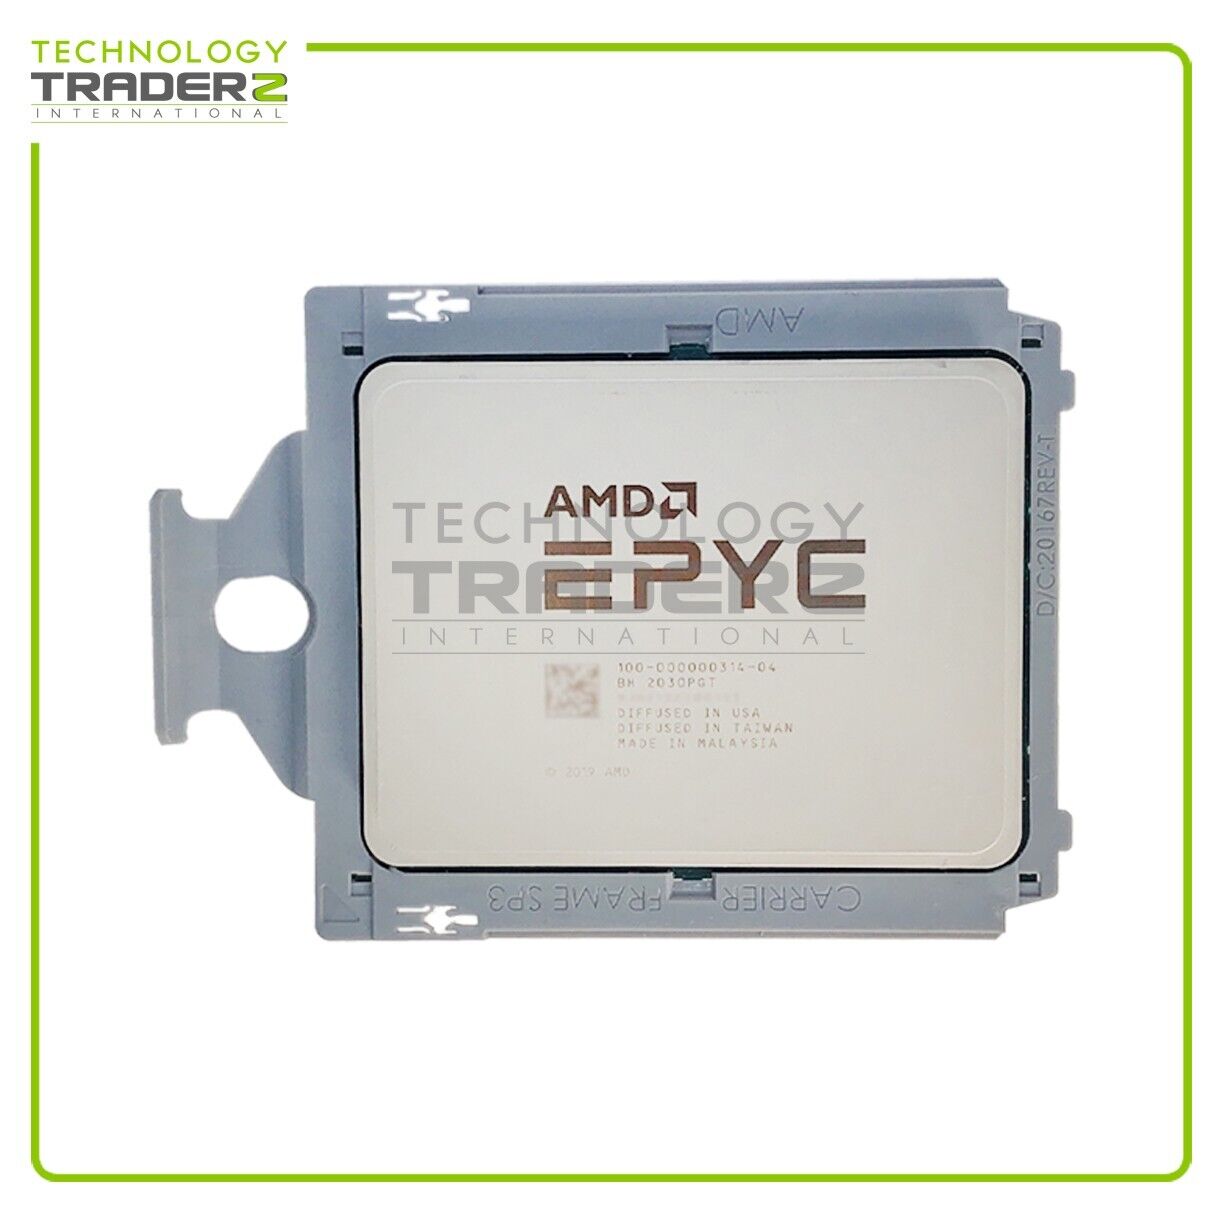 100-000000314-04 AMD EPYC 7763 64-Core 2.45GHz ES Processor *NO VENDOR LOCKED*